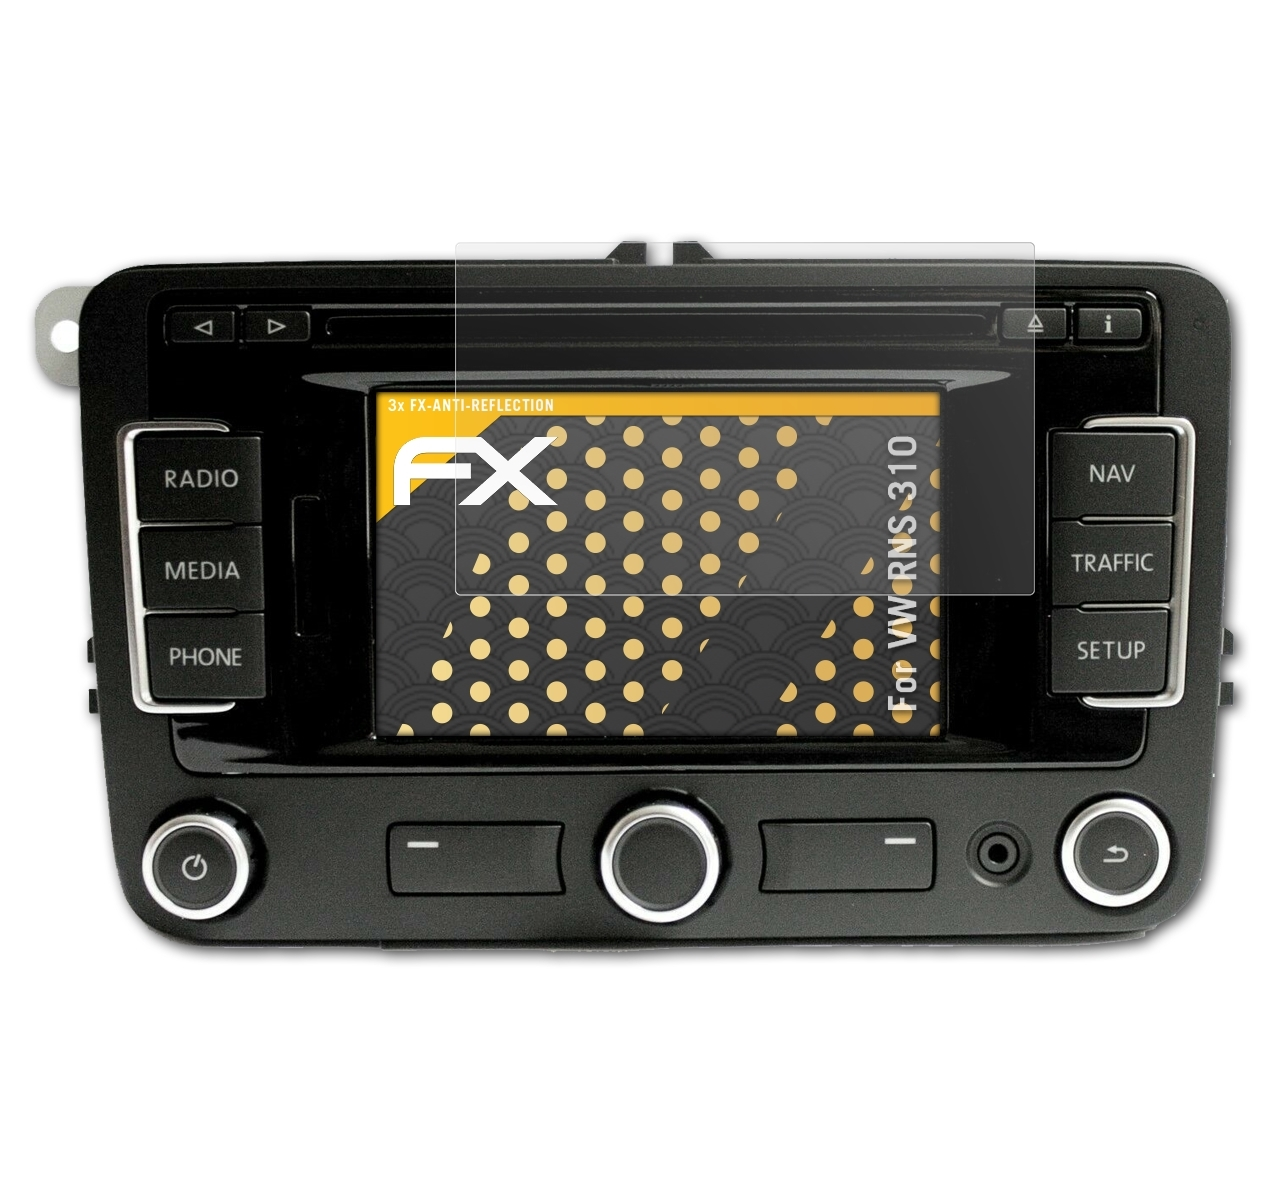 RNS Displayschutz(für VW FX-Antireflex 3x 310) ATFOLIX